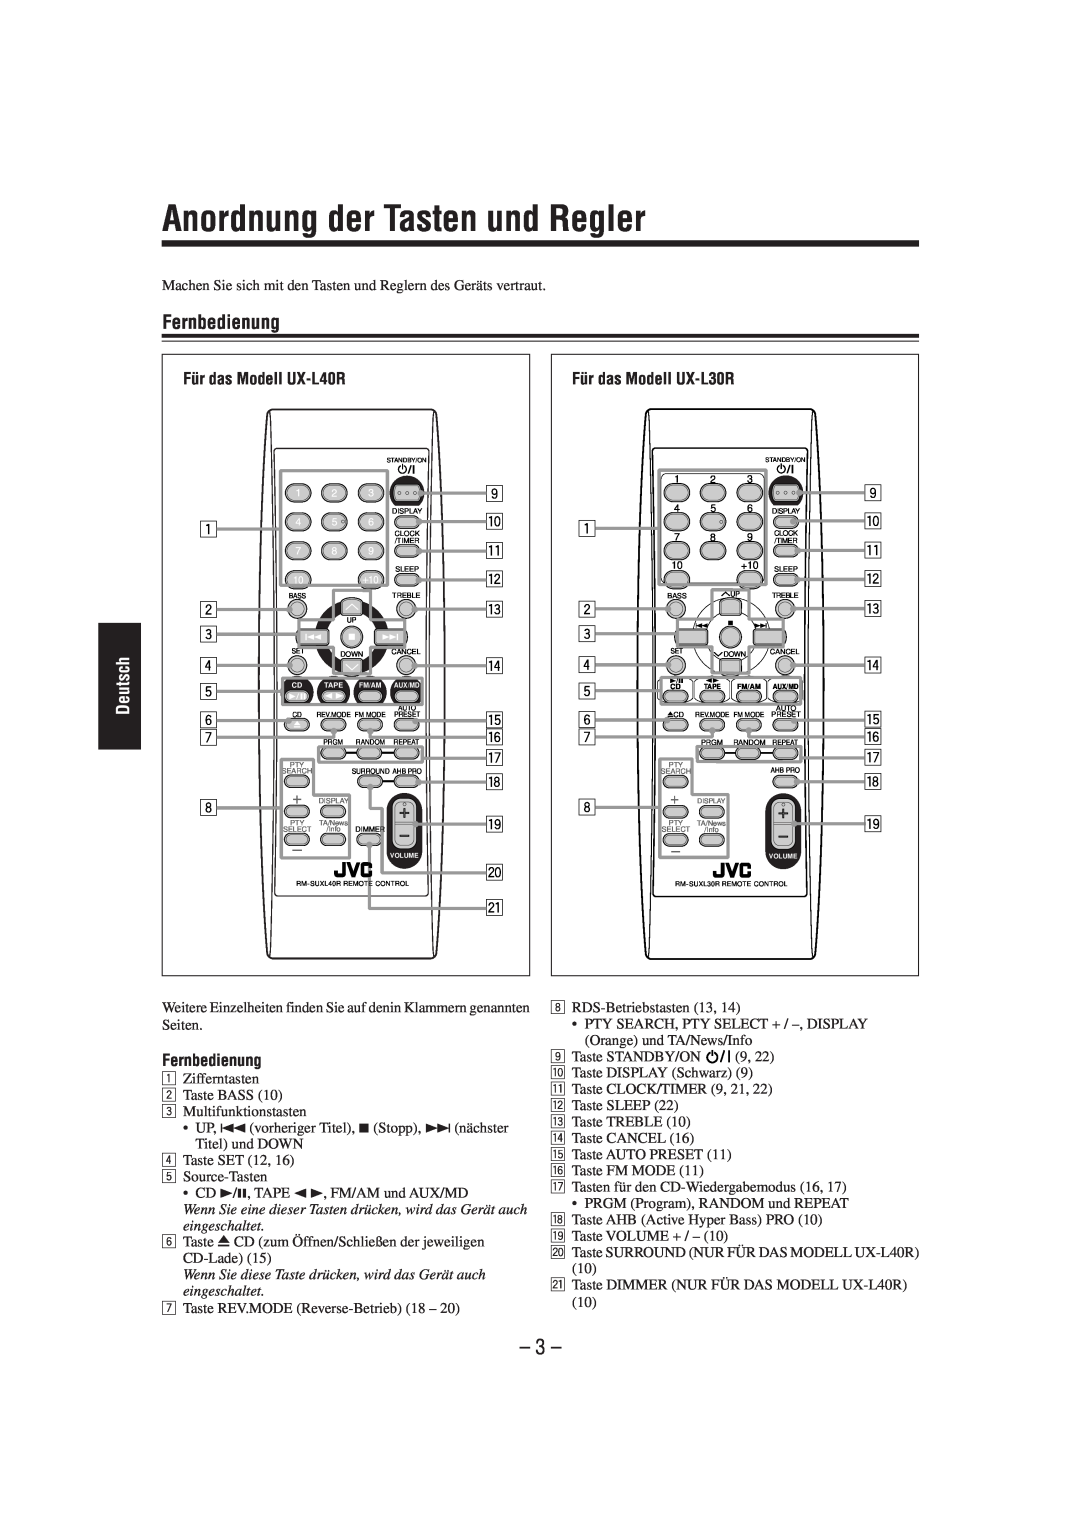 JVC SP-UXL30, UX-L40R, UX-L30R, SP-UXL40, CA-UXL40R, CA-UXL30R manual Anordnung der Tasten und Regler, Fernbedienung, Deutsch 